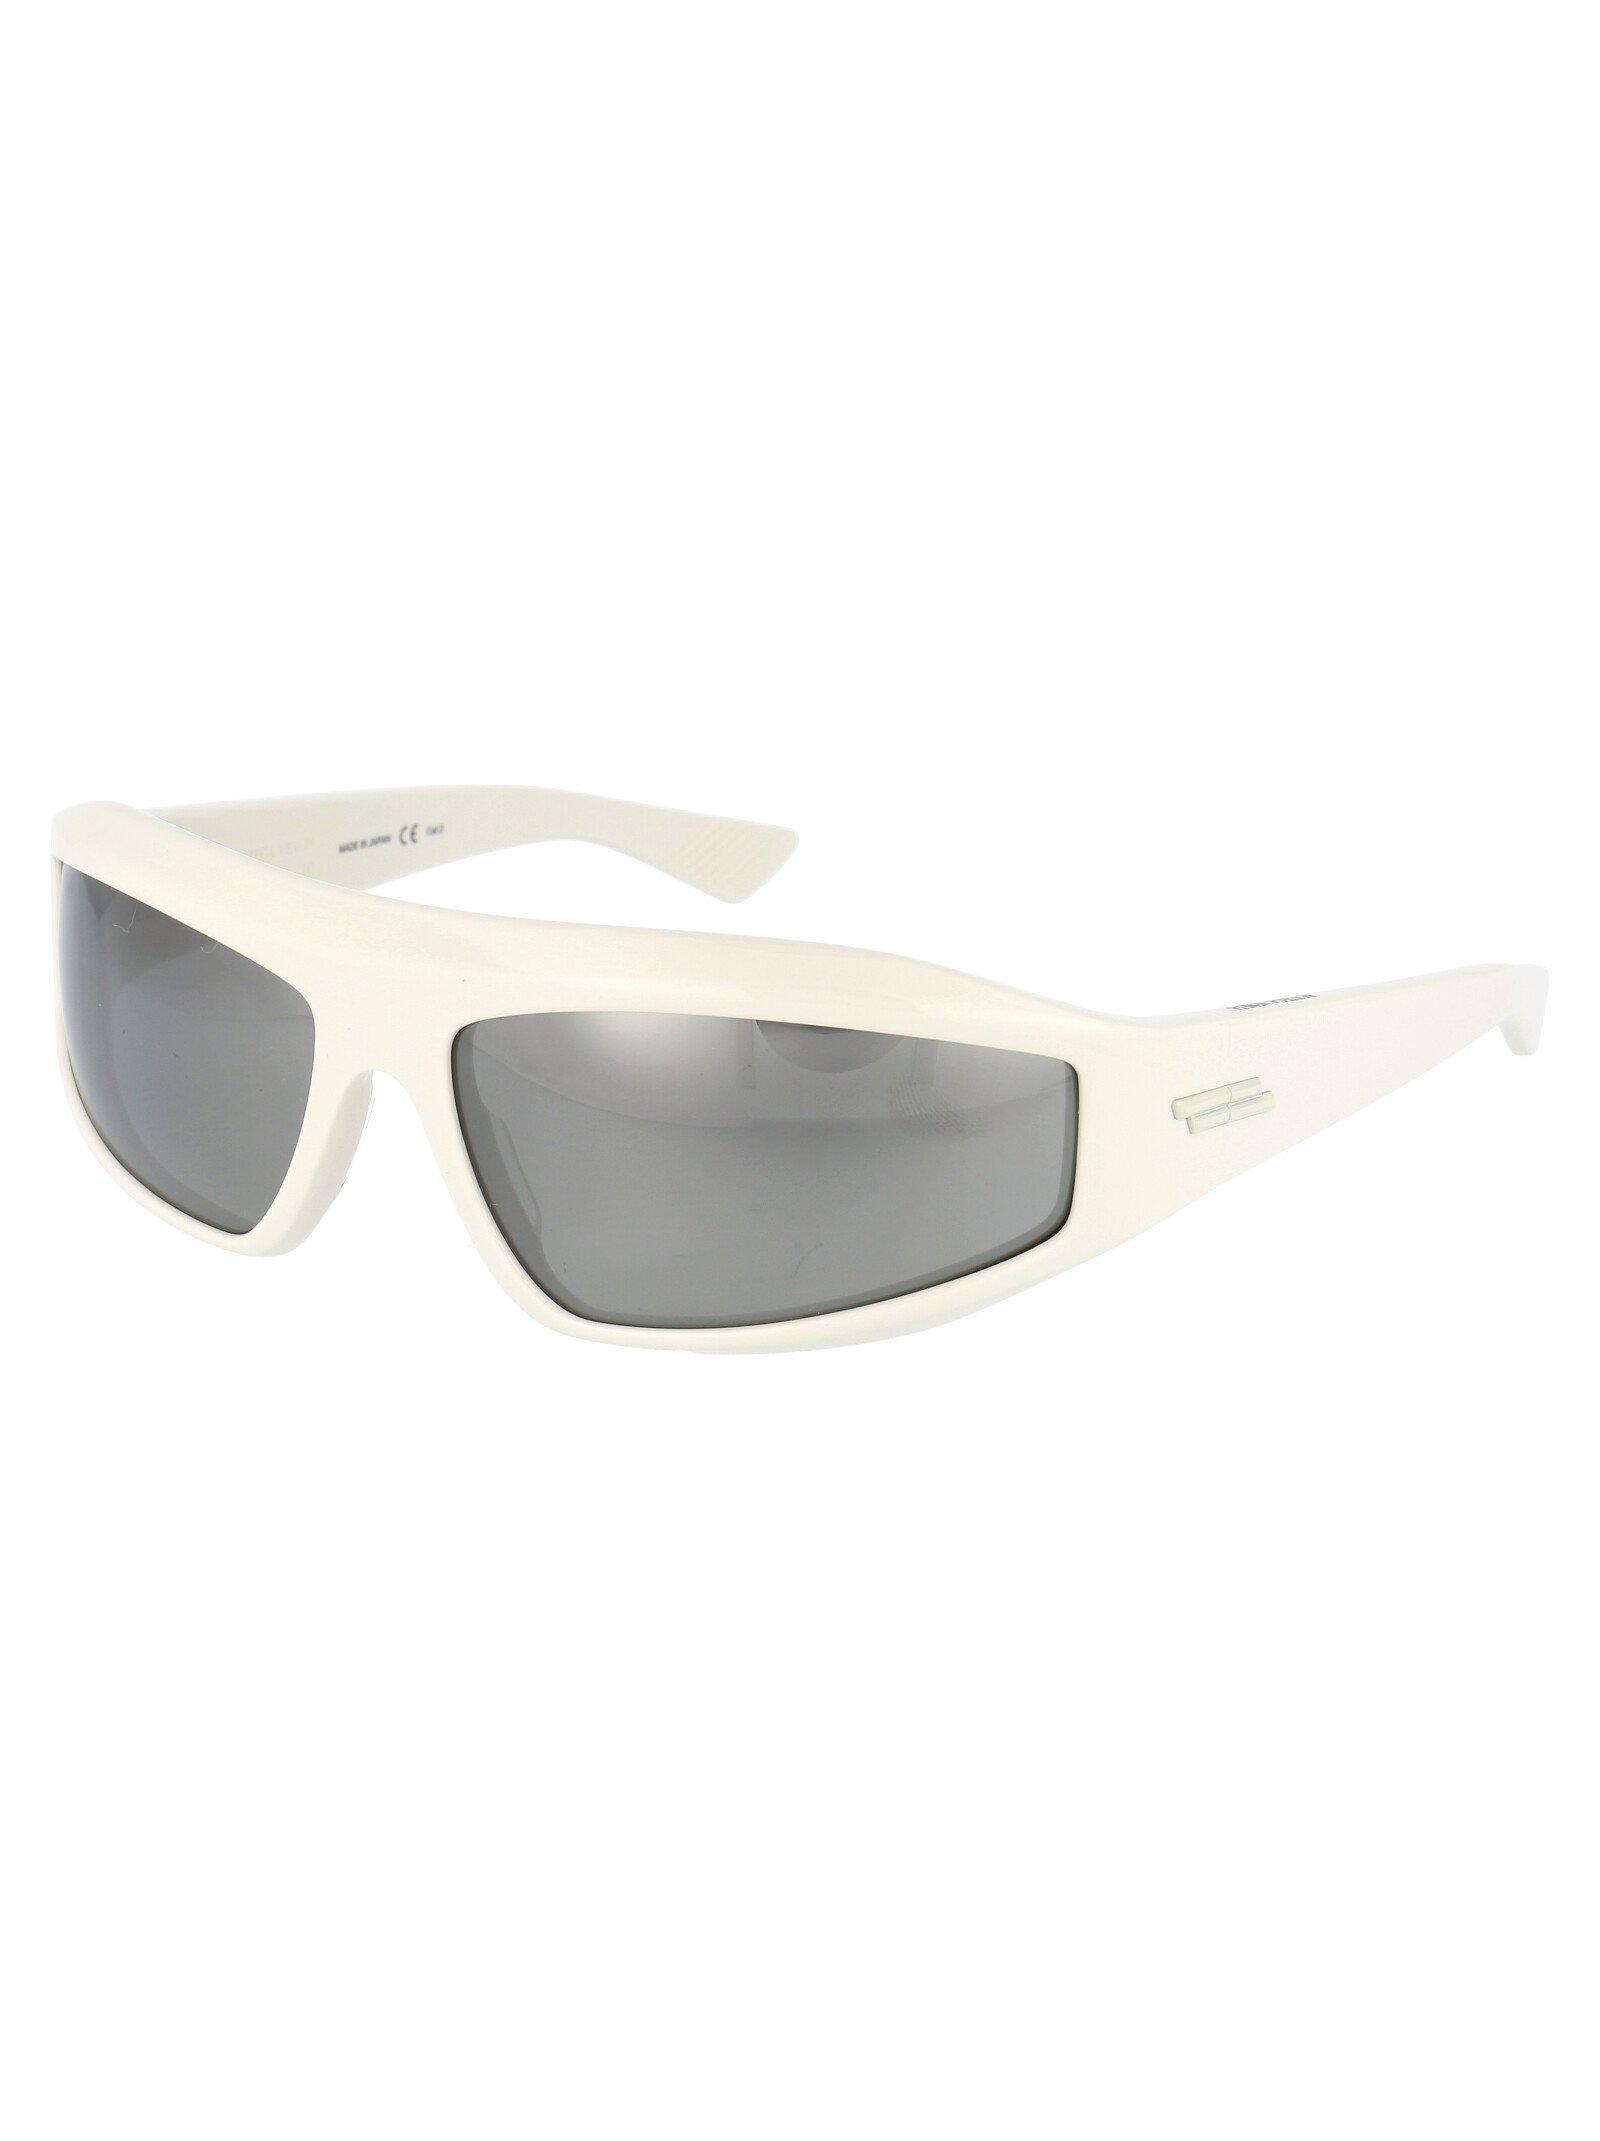 Bottega Veneta Sunglasses for Men - Lyst